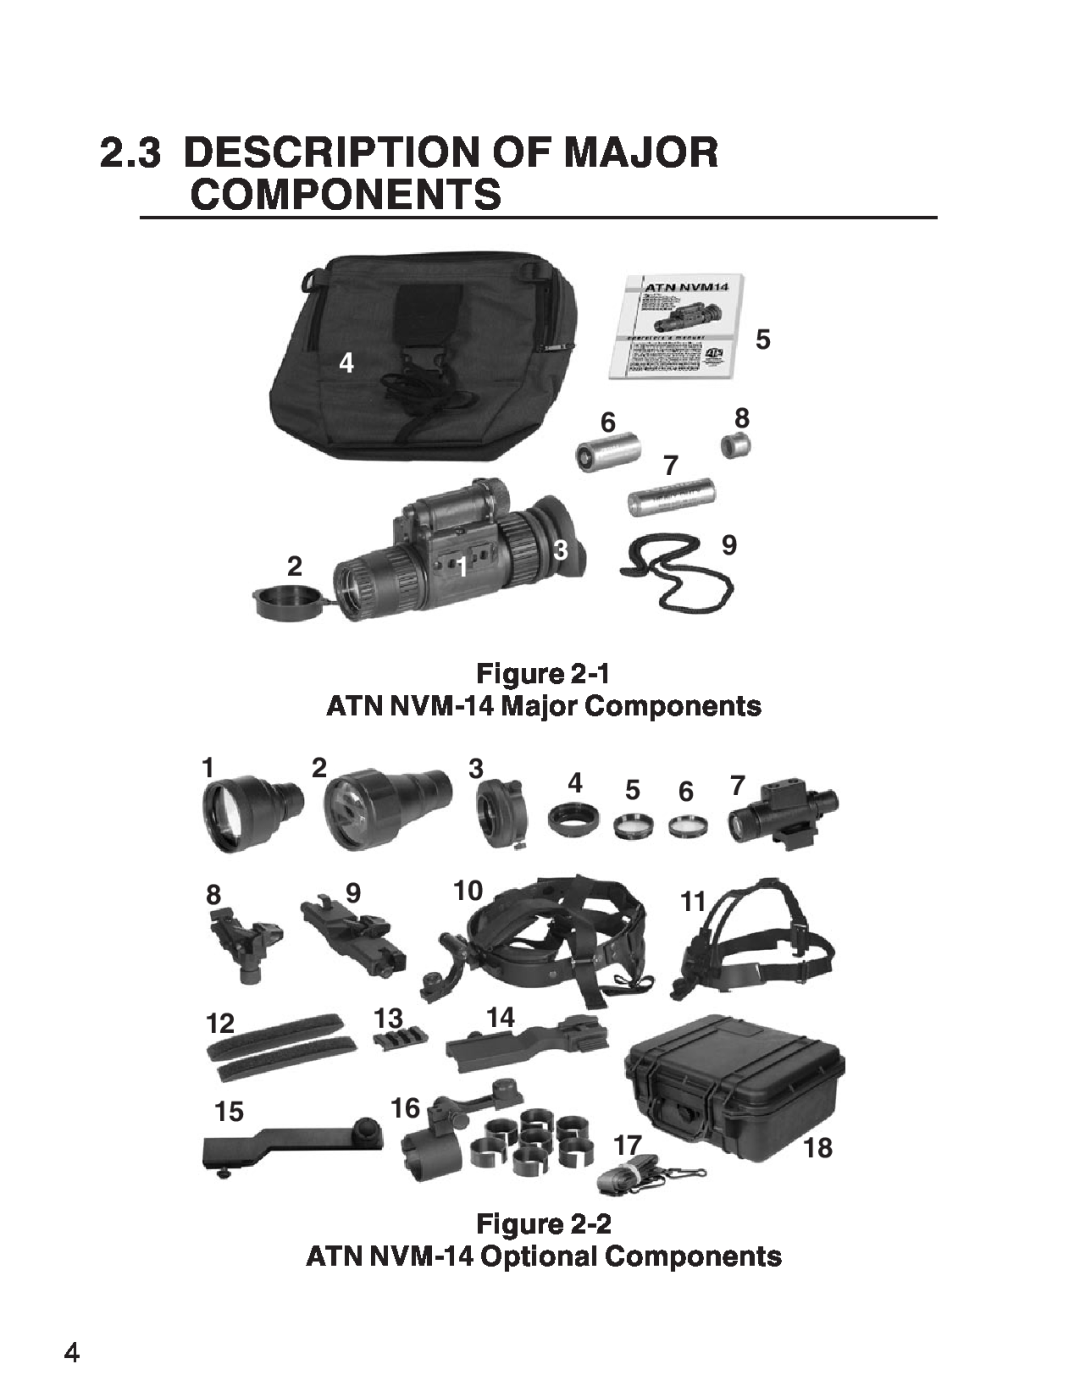 ATN 3 manual Description Of Major Components, ATN NVM-14 Optional Components 